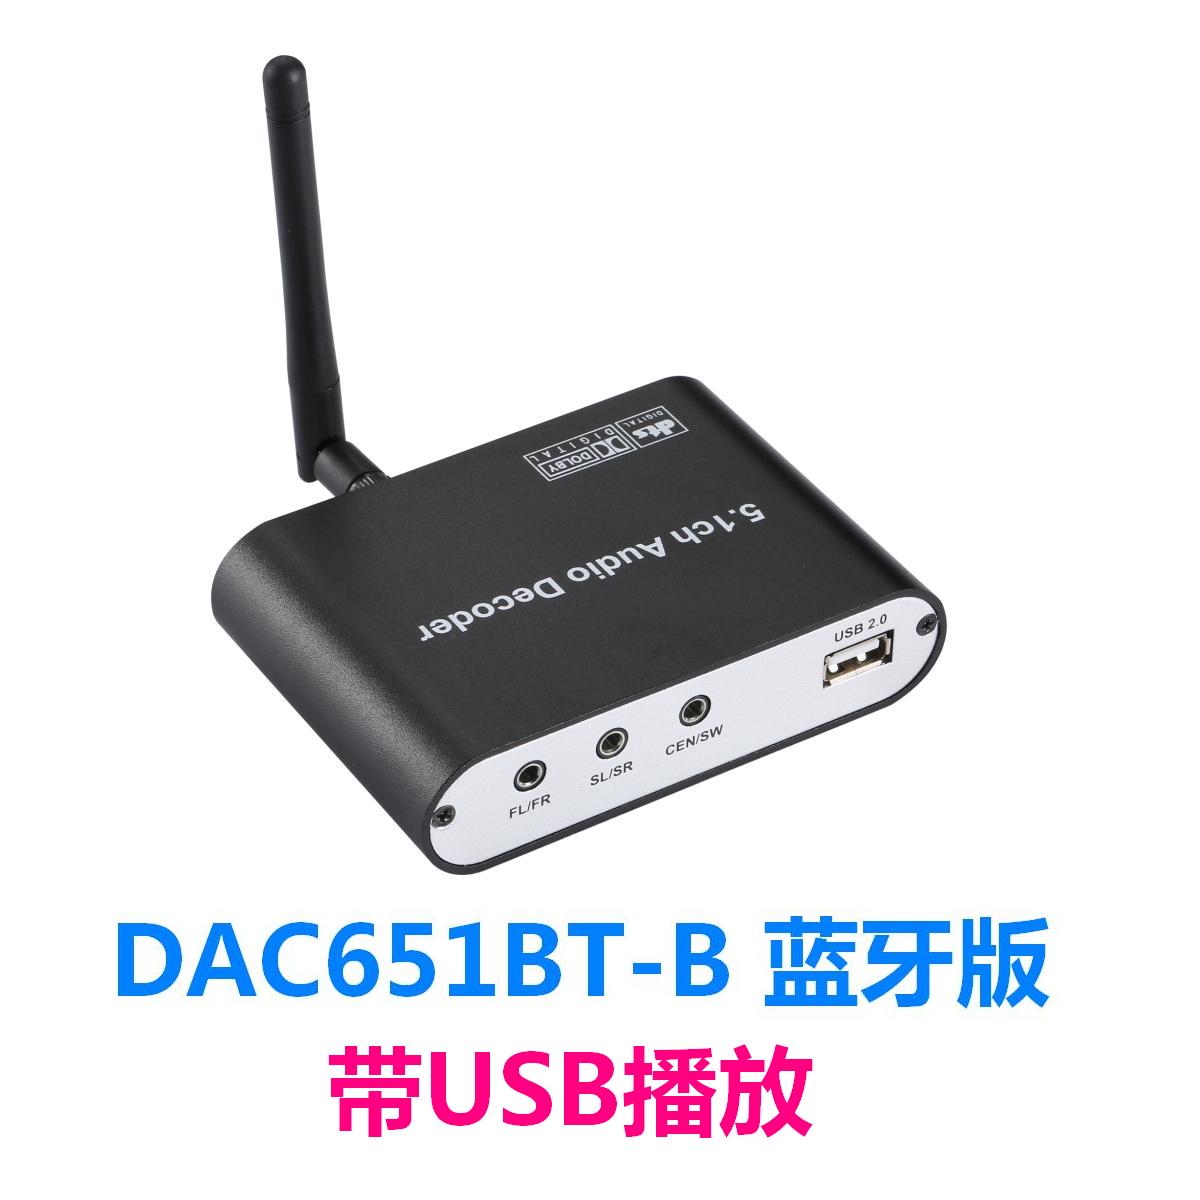 DAC651BT-B: 光纤同轴DTS/杜比5.1音频转换器 蓝牙5.0接收器 USB无损音乐播放